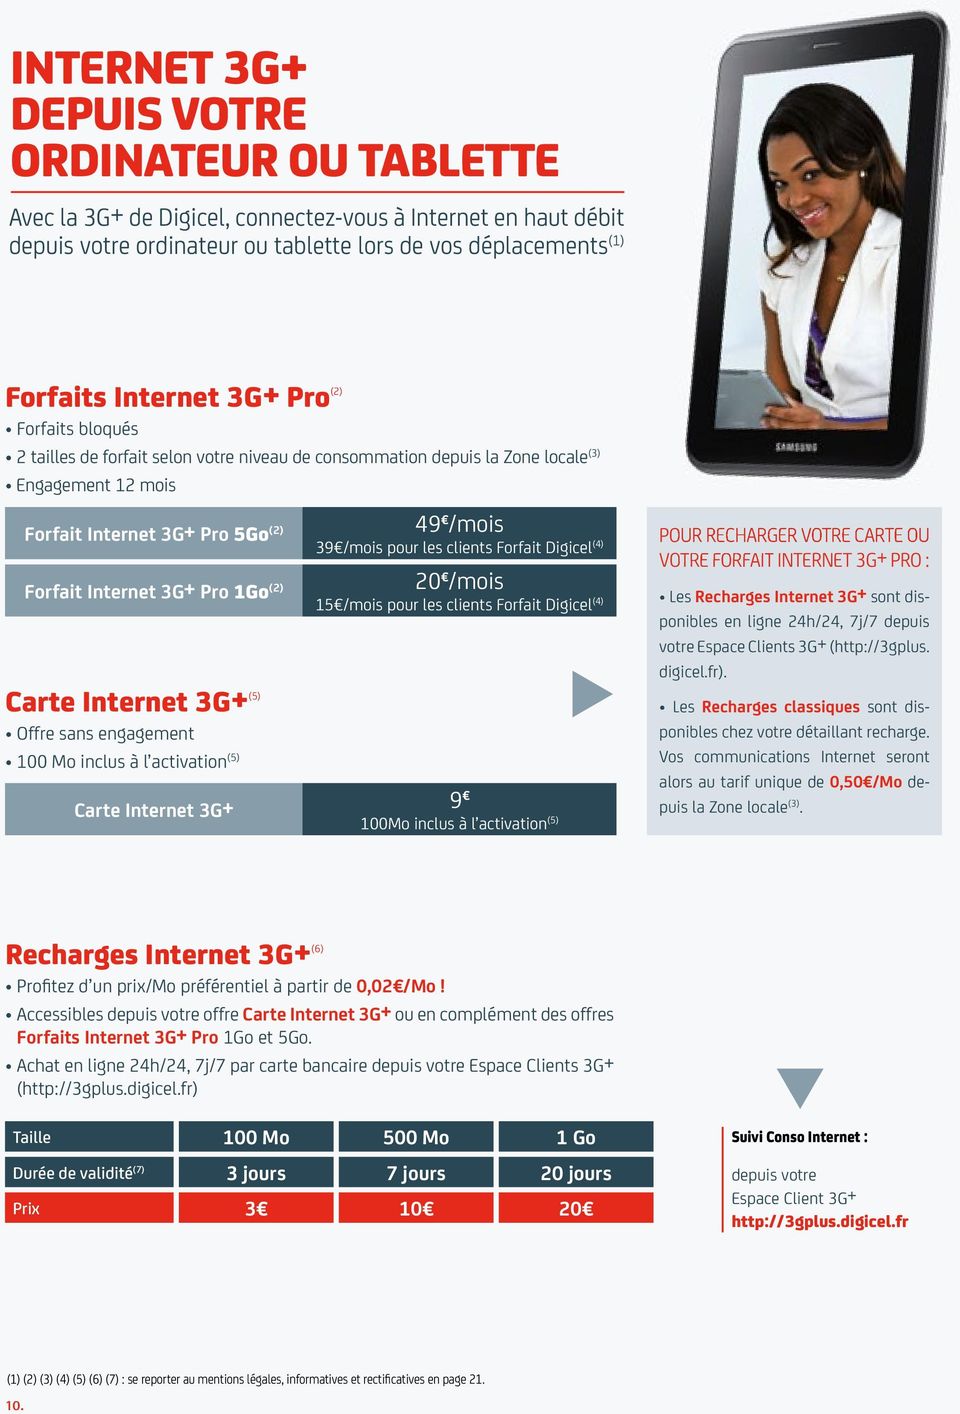 internet 3g+ (5) Offre sans engagement 100 Mo inclus à l activation (5) 49 /mois 39 /mois pour les clients Forfait Digicel (4) 20 /mois 15 /mois pour les clients Forfait Digicel (4) Carte Internet